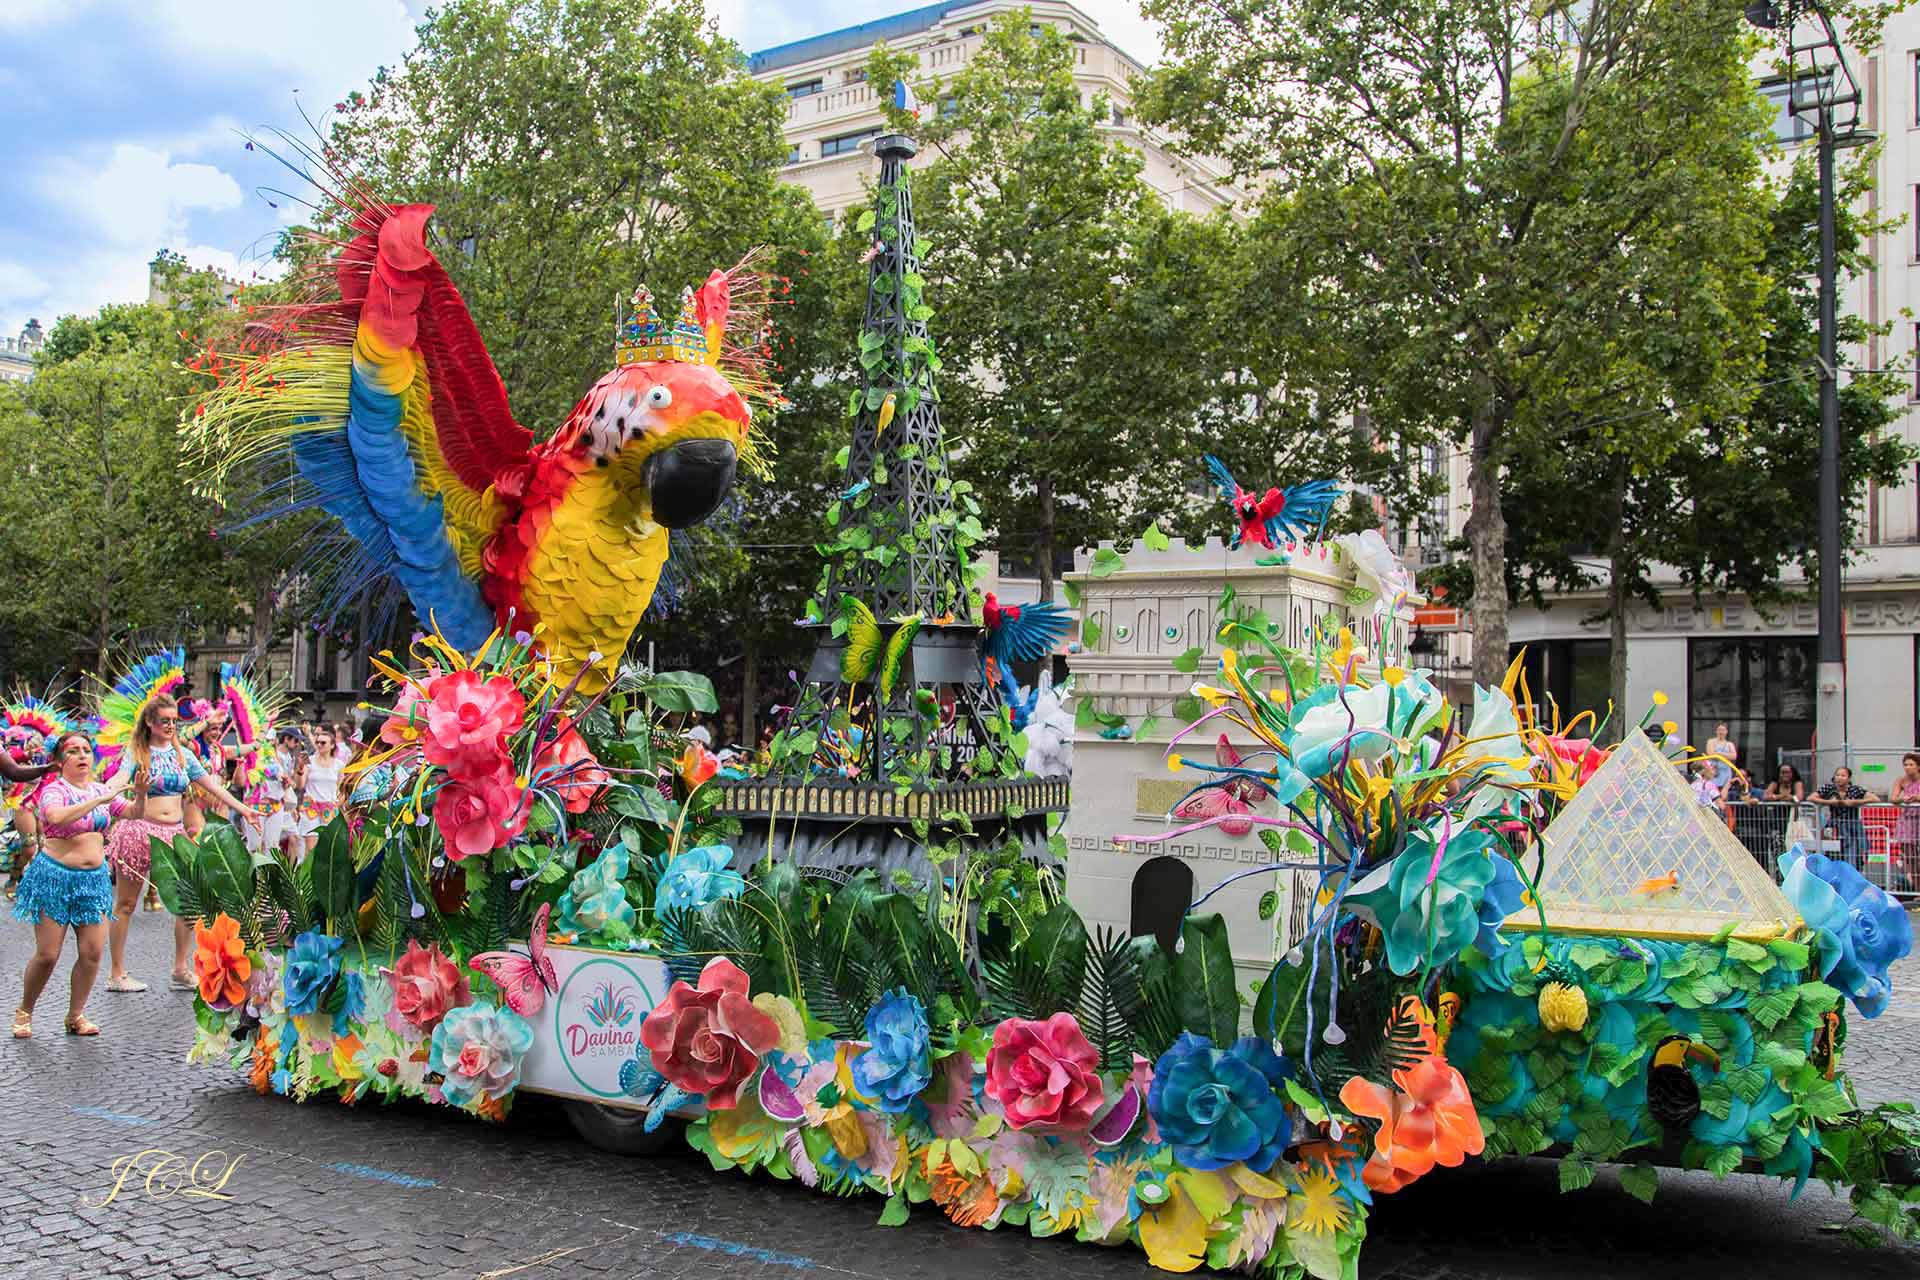 Défilé du Carnaval tropical sur la plus belle avenue du monde que sont les Champs Elysées en présence de Madame la Maire de Paris Anne Hidalgo.